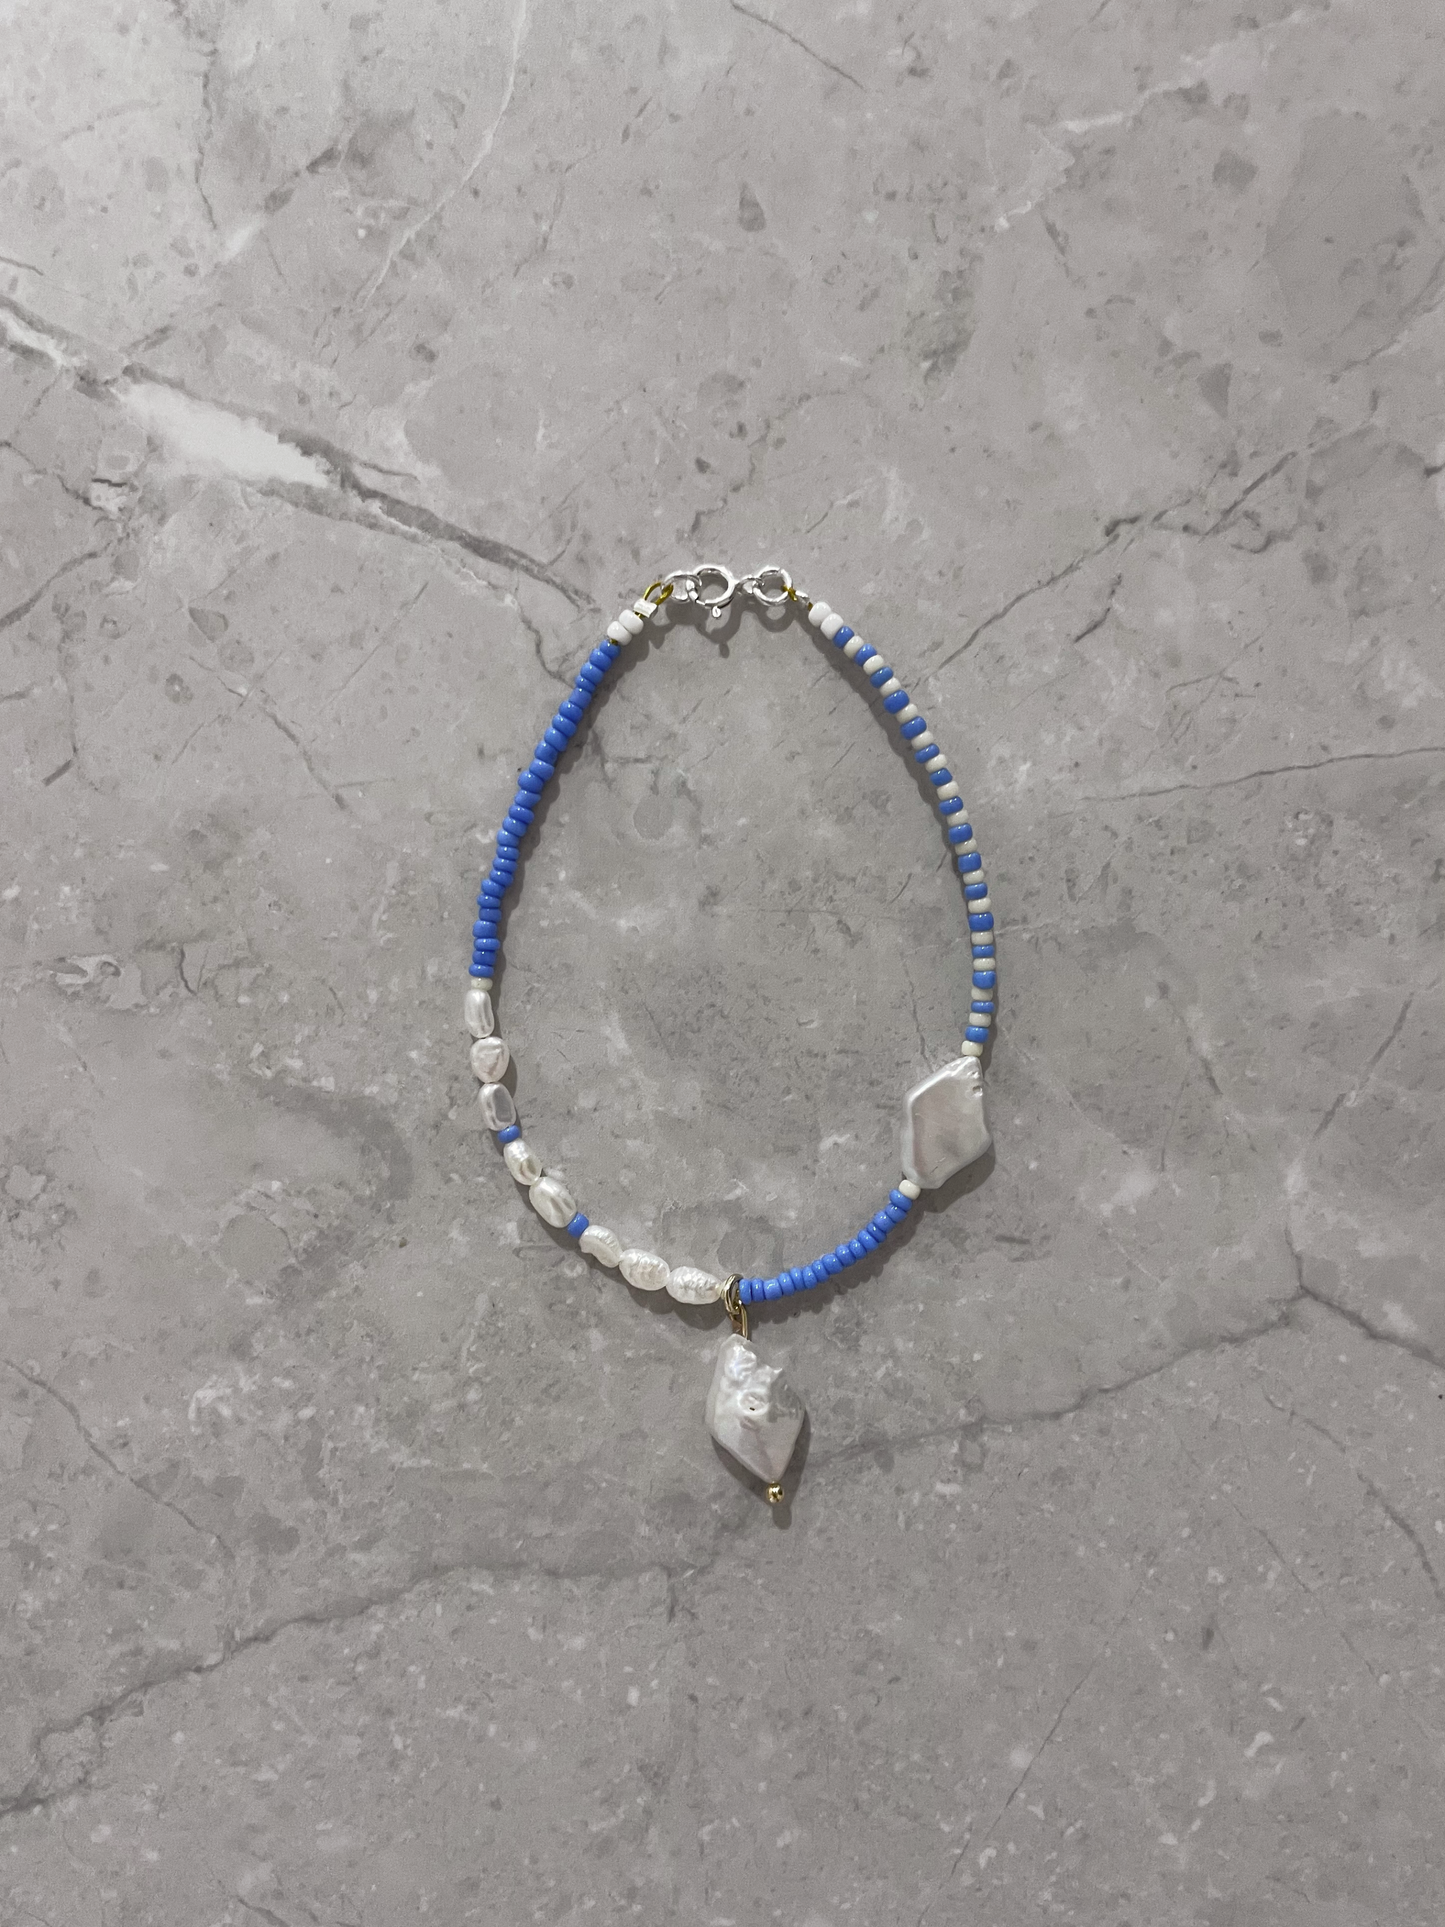 The Blueberry Zebra Bracelet